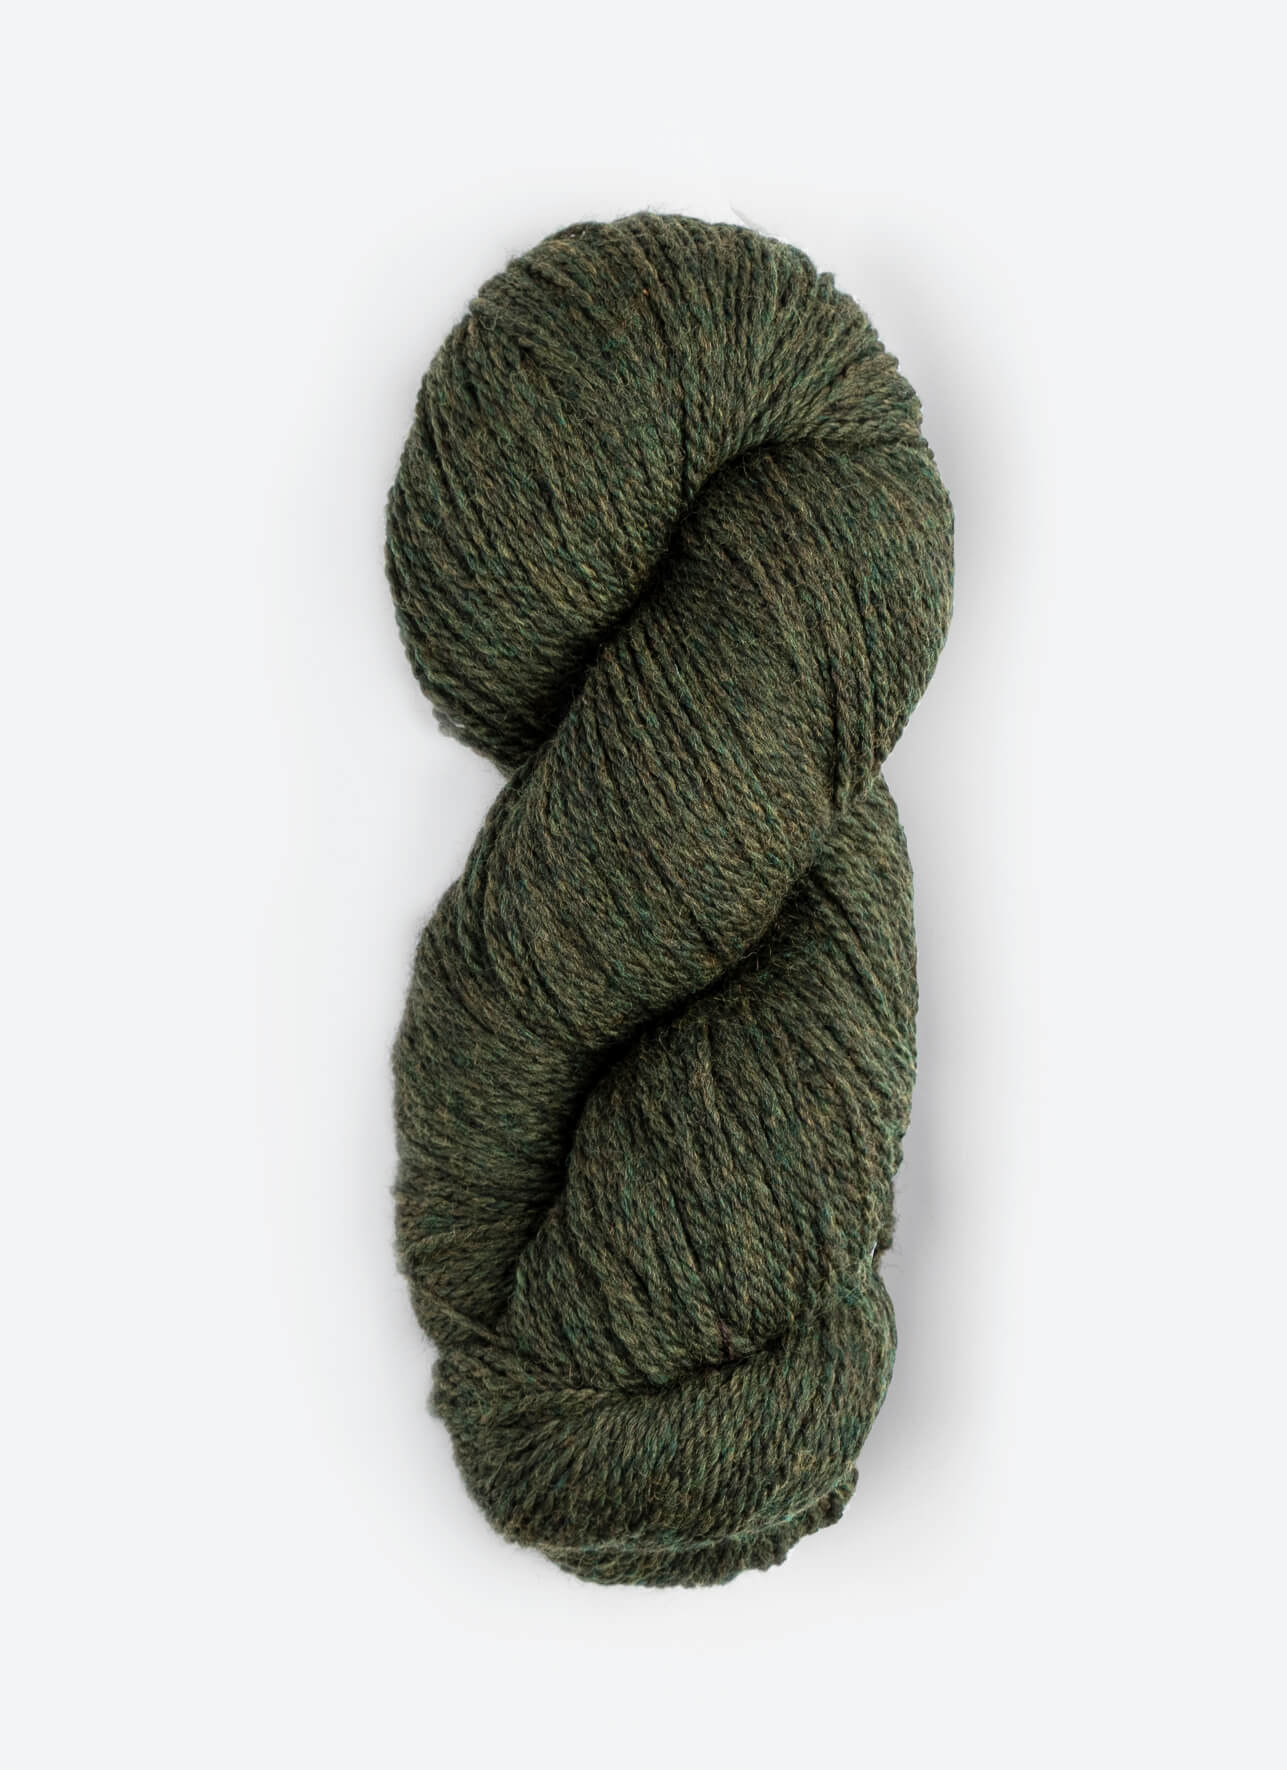 Blue Sky Fibers Woolstok 150 gram wool yarn color 1306